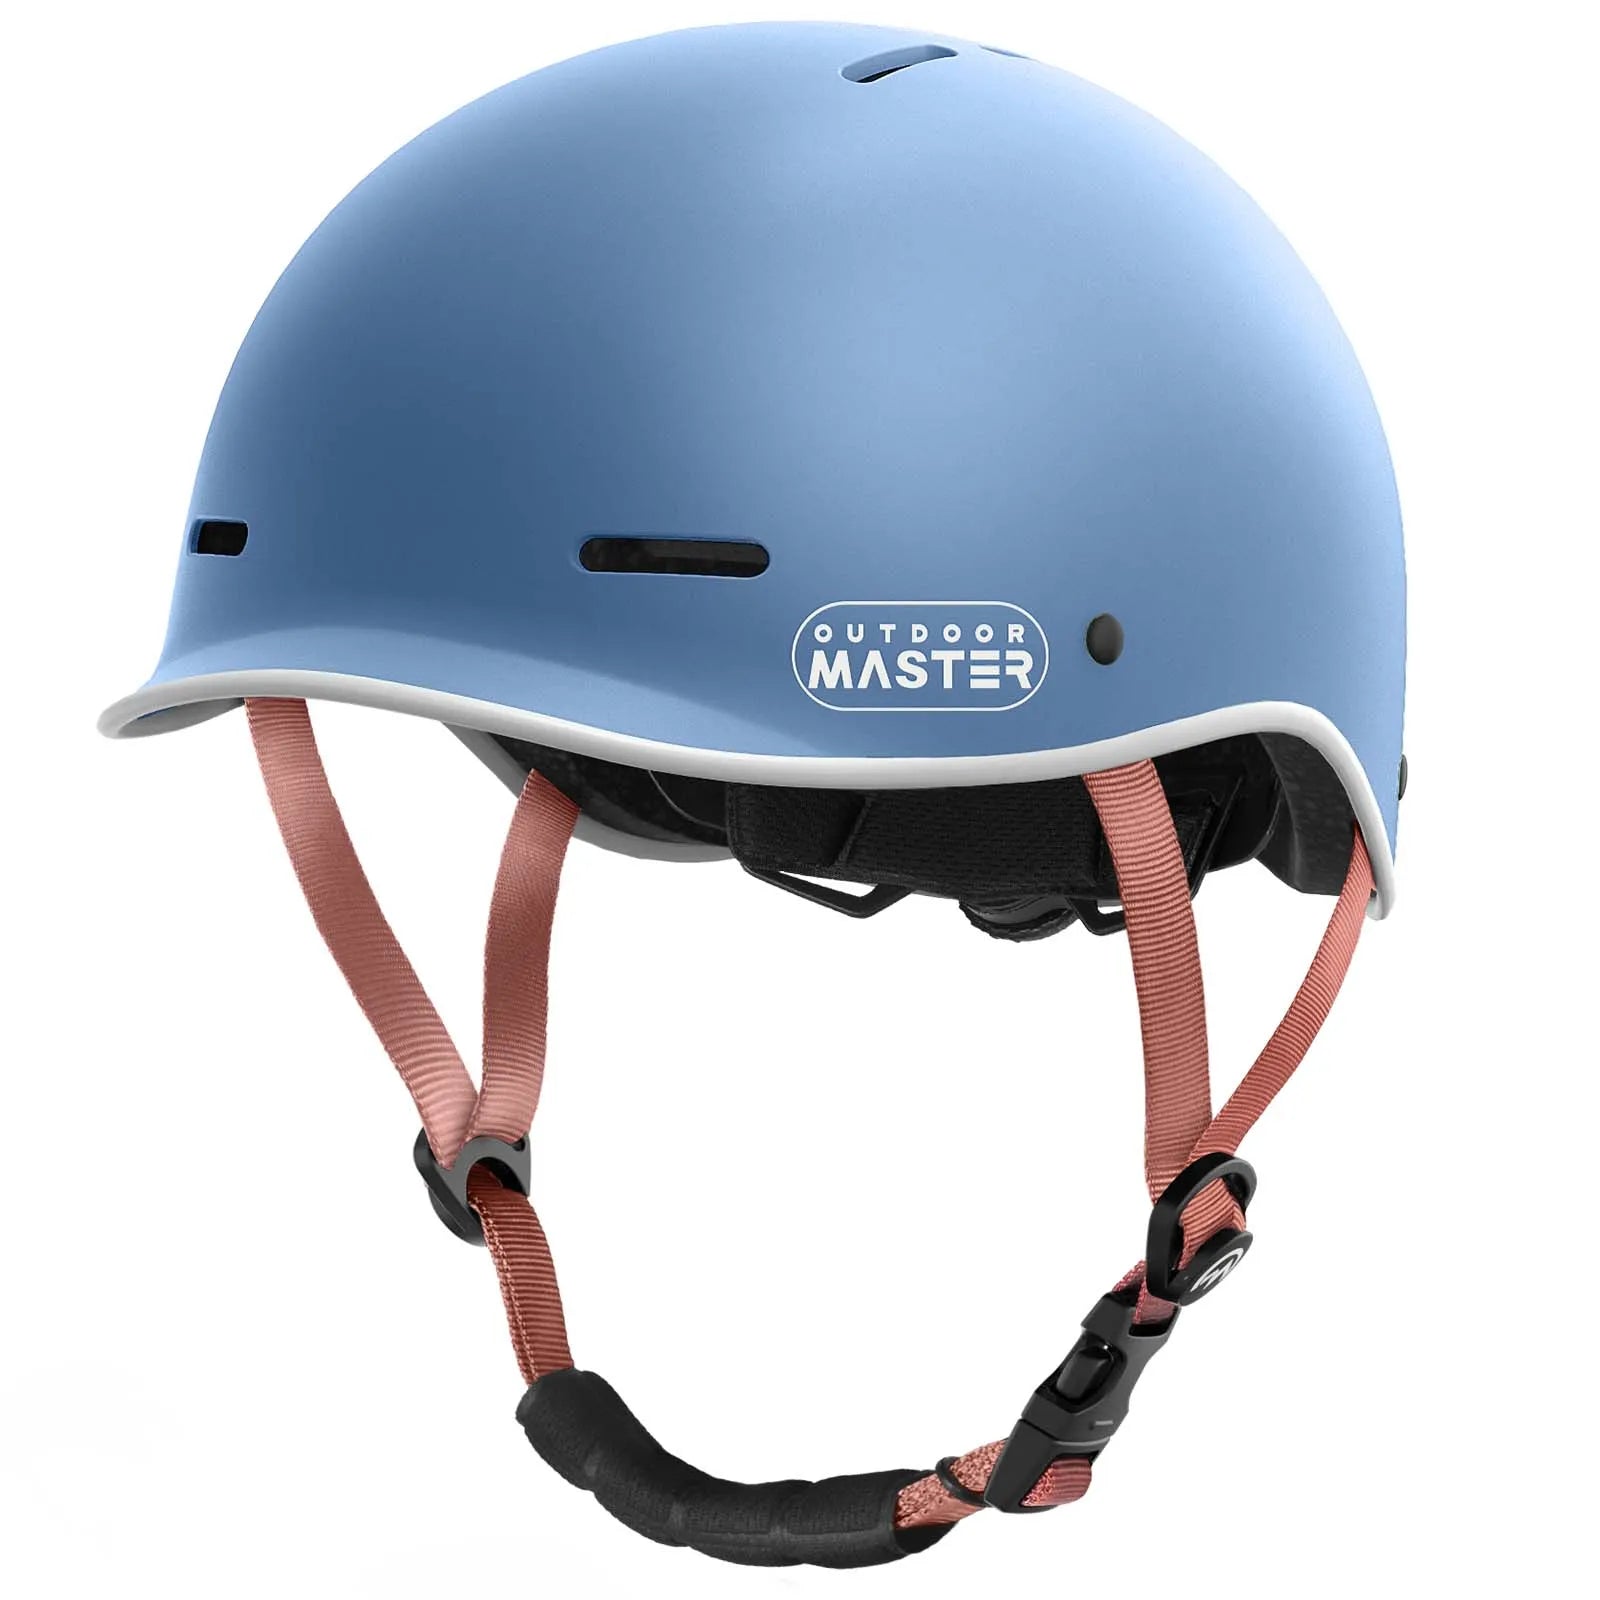 Beetles Urban Skateboard & Road Bike Helmet